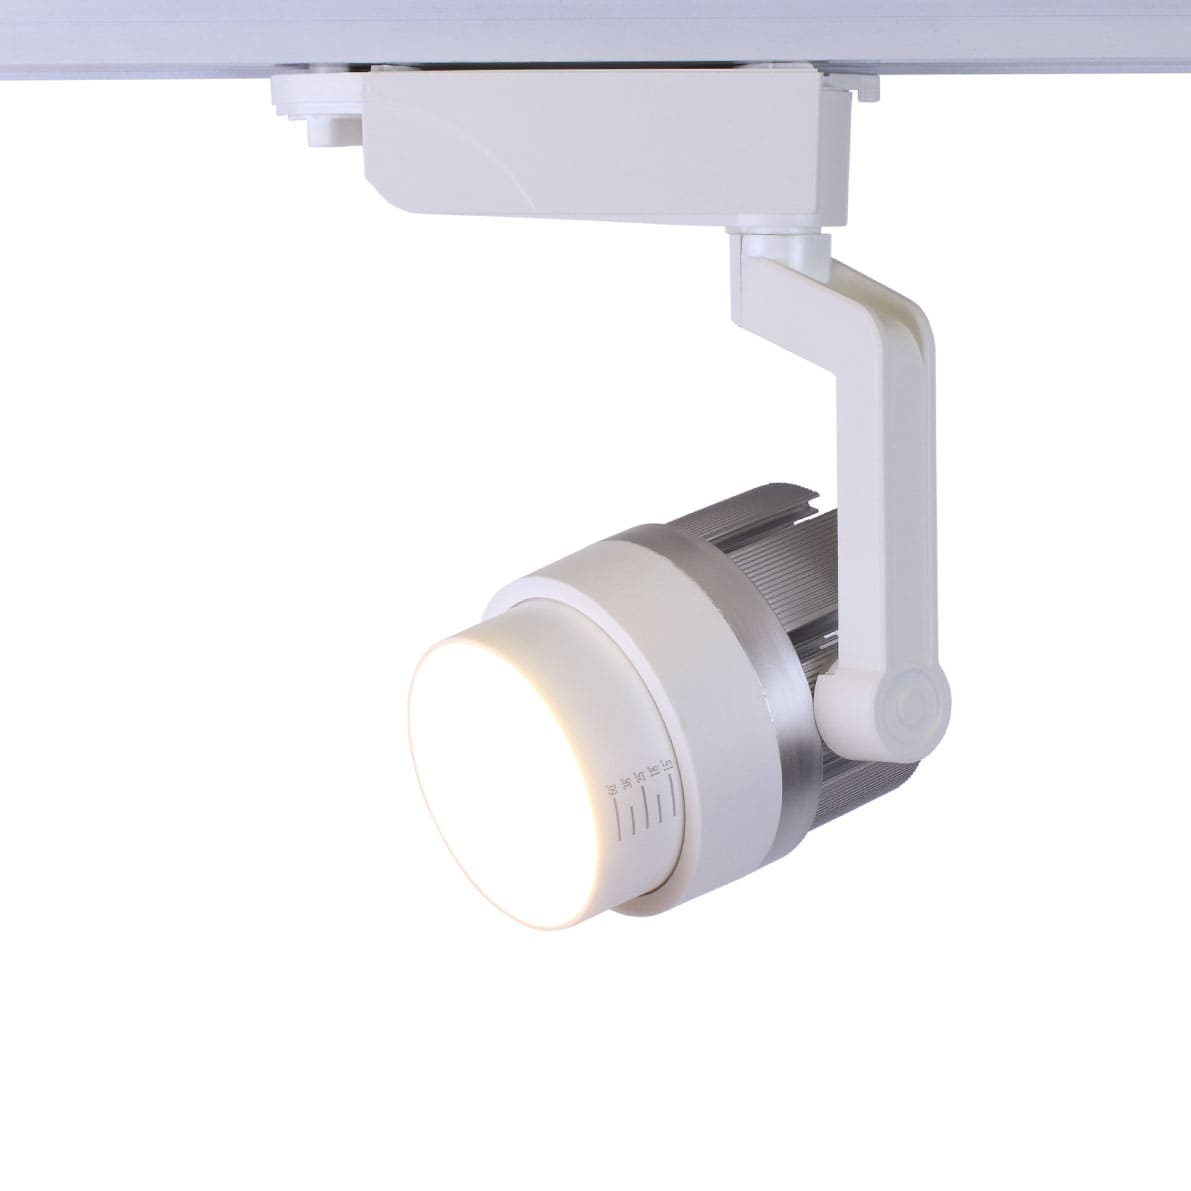 Светодиодный светильник трековый JH-GD002 2L PX59 (20W, 220V, 15-60deg, white)